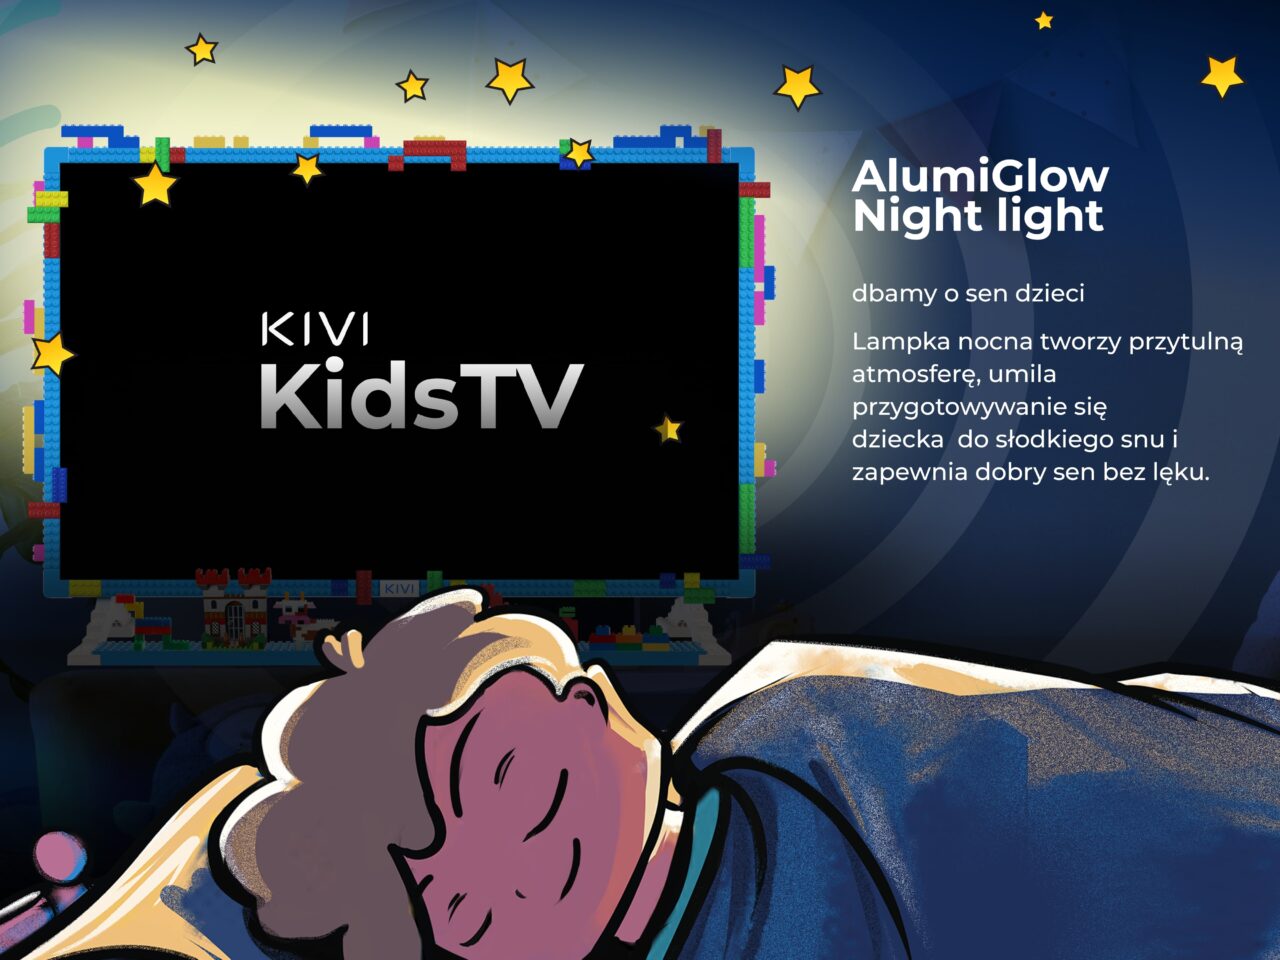 Tekst graficzny "KIVI KidsTV" na tle telewizora z kolorowymi klockami wokół, obok grafika śpiącego dziecka i tekst reklamujący "AlumiGlow Night light" twierdzący, że zapewnia on dobre przygotowanie do snu i bezpieczny sen dla dzieci.